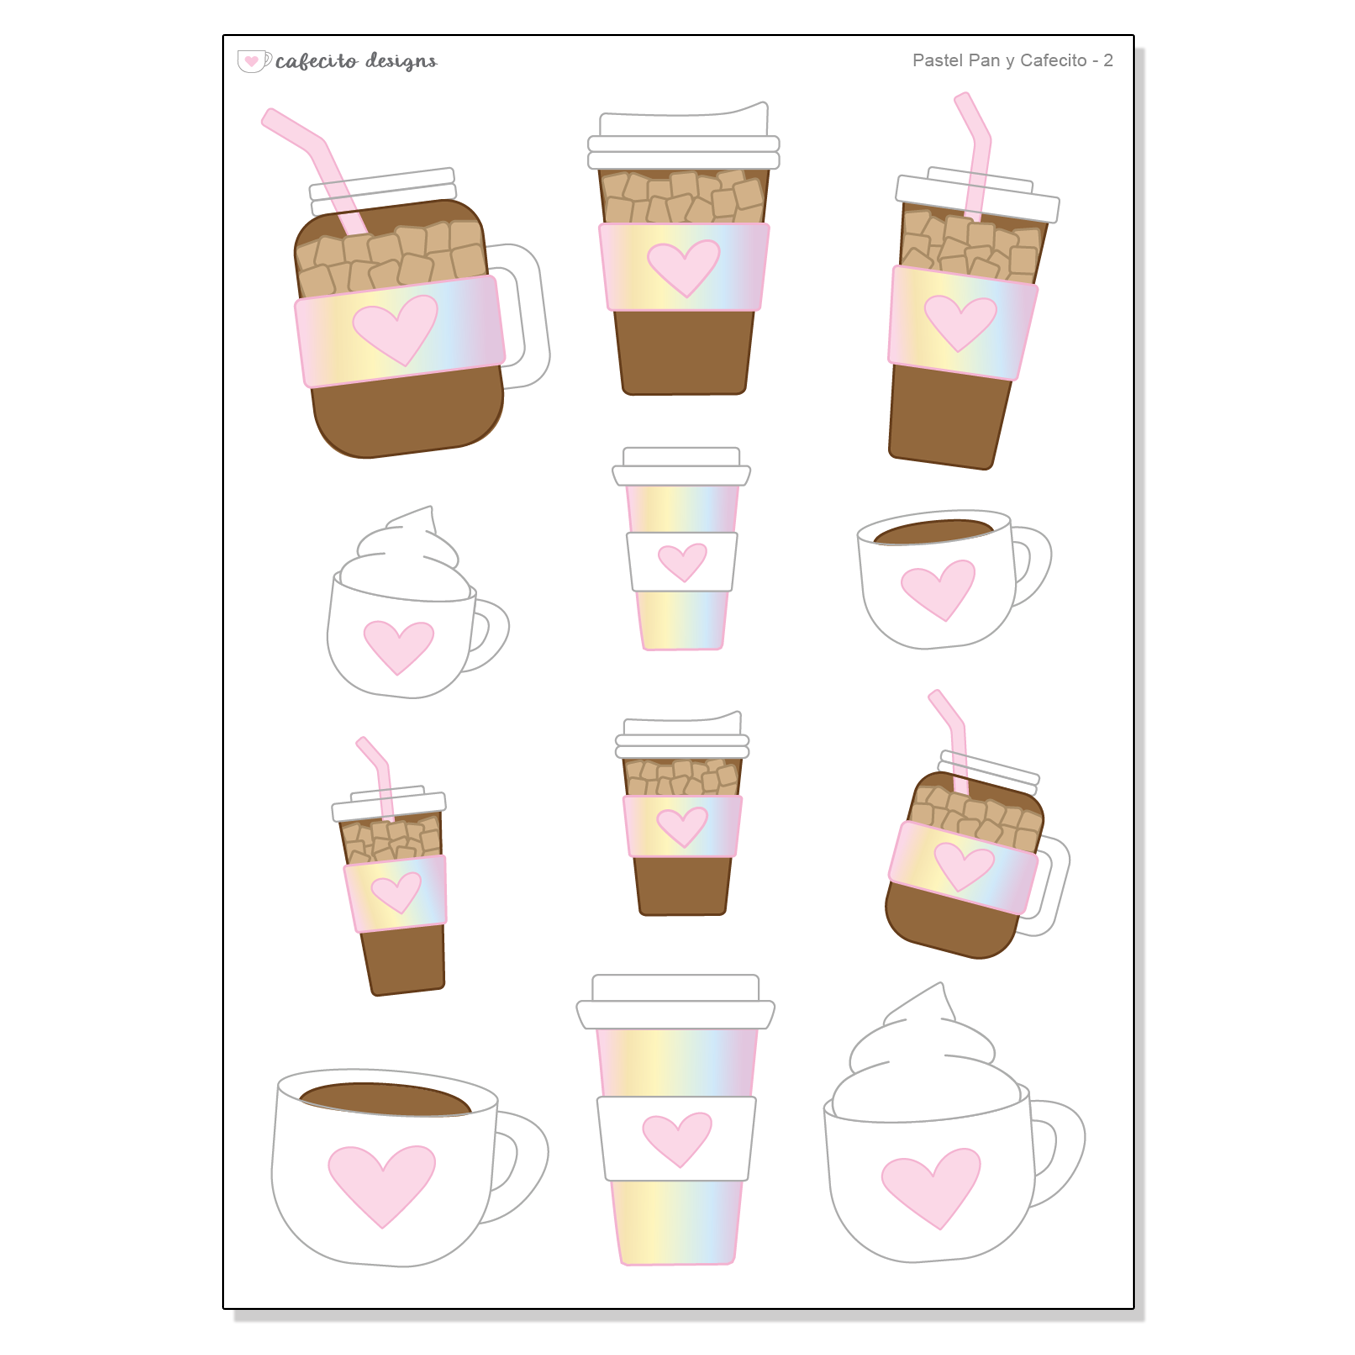 Pastel Pan y Cafecito - Deco Sticker Sheet